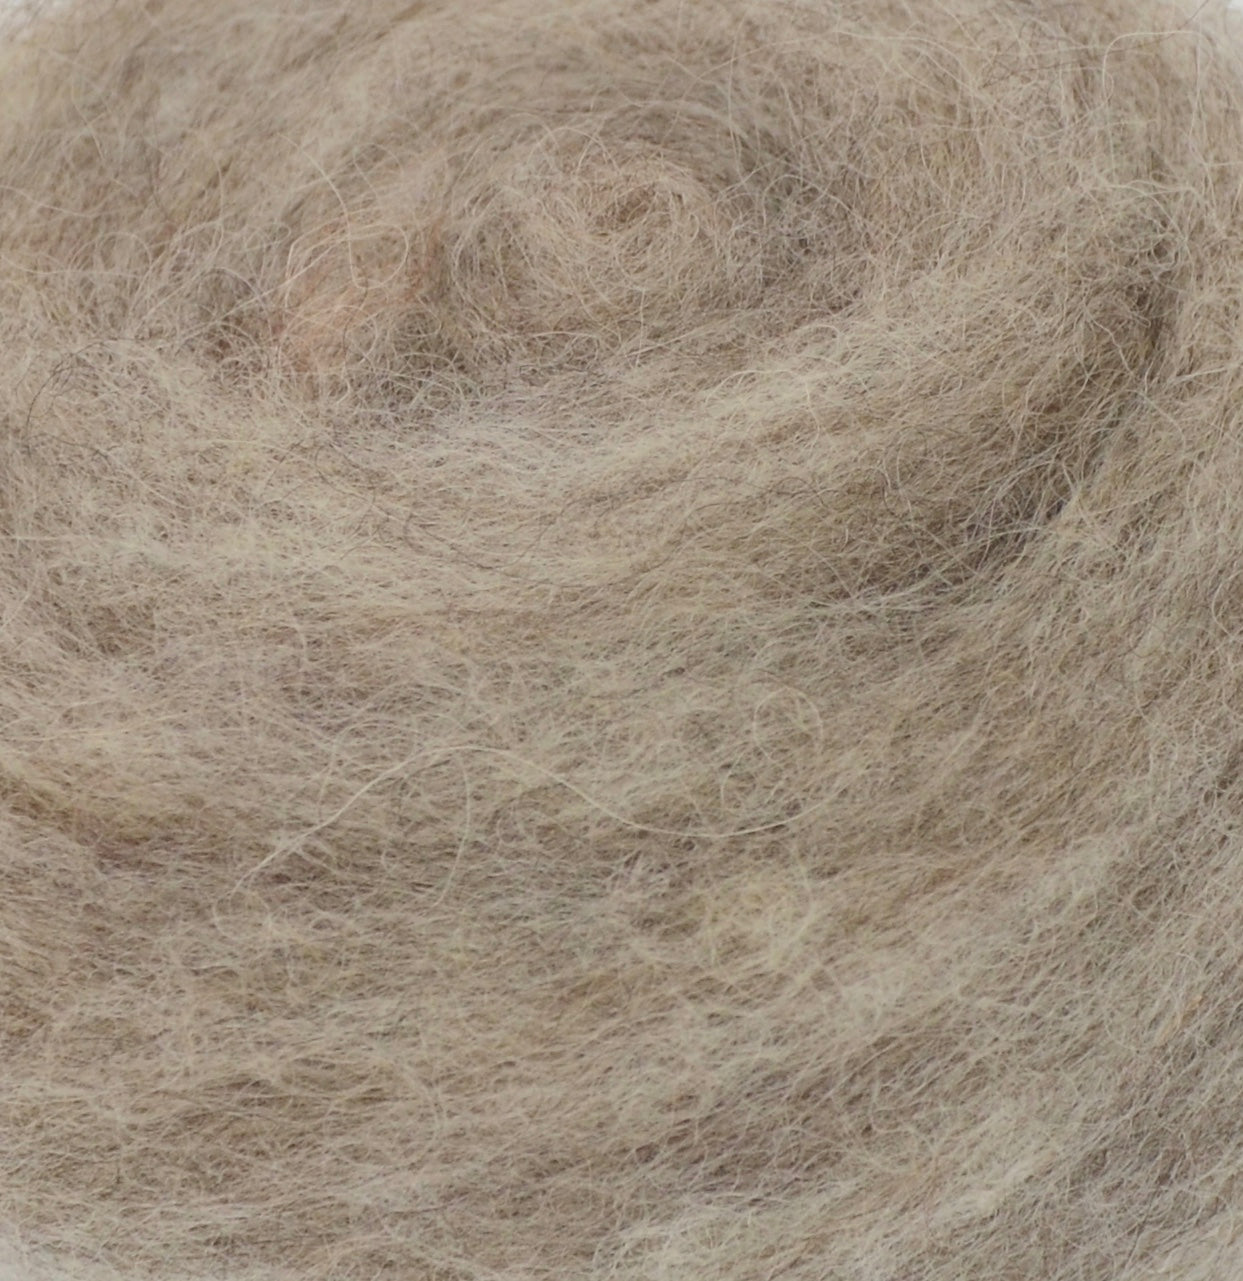 MINI-BATT: NATURAL BROWN- Wool Batting for Felting, Spinning, Weaving, –  FeltLOOM